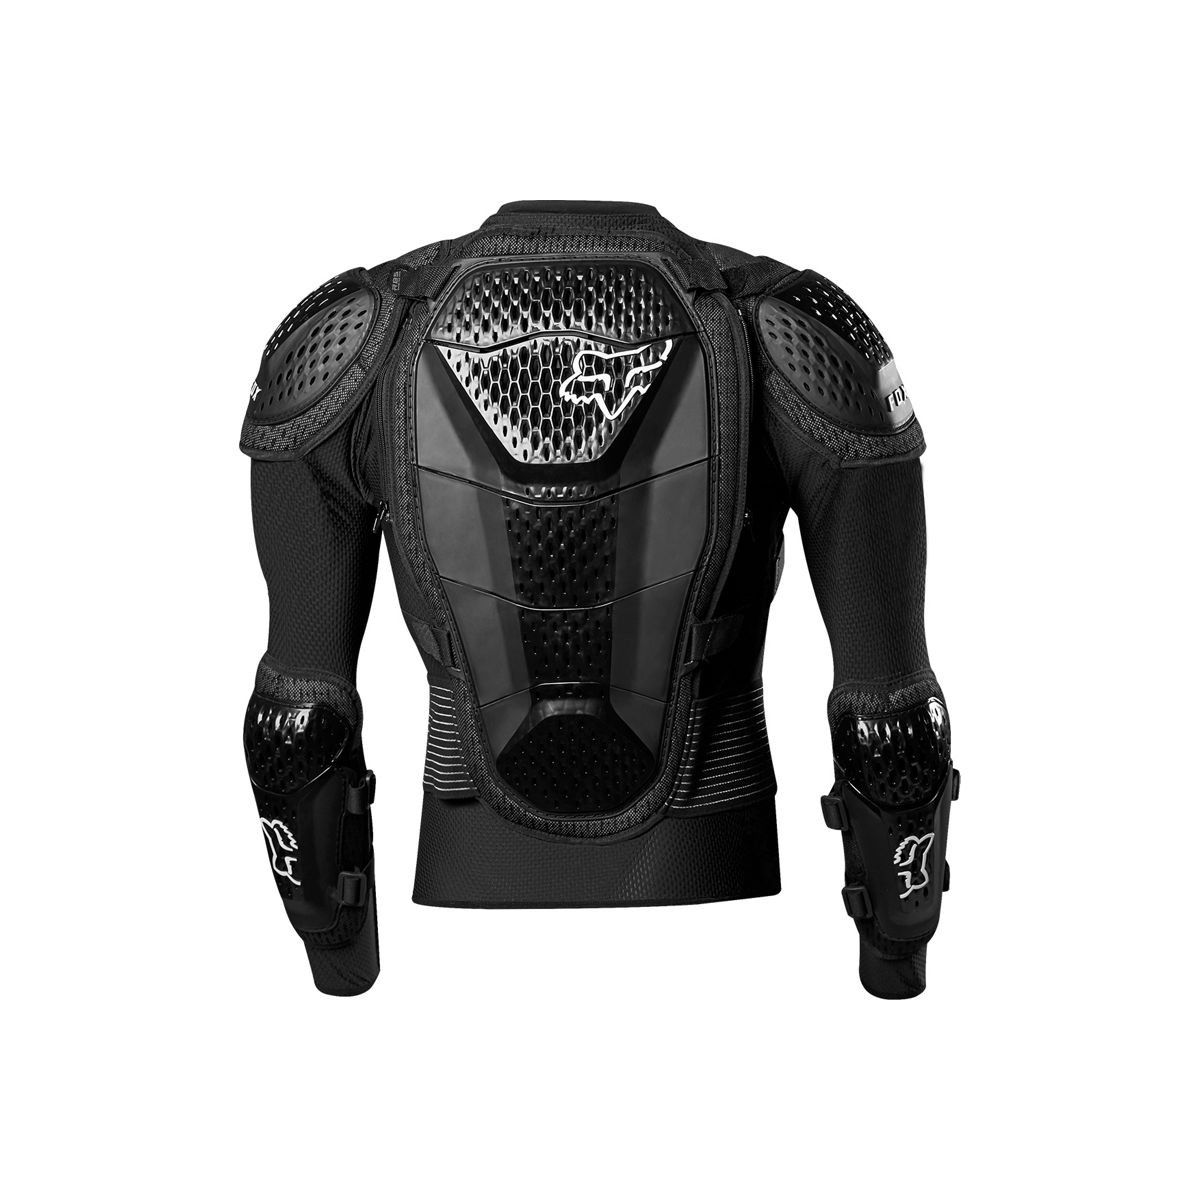 Peto de protección integral Fox Titan niño color negro para Dh | Descenso | Enduro | Motocross | espaldera